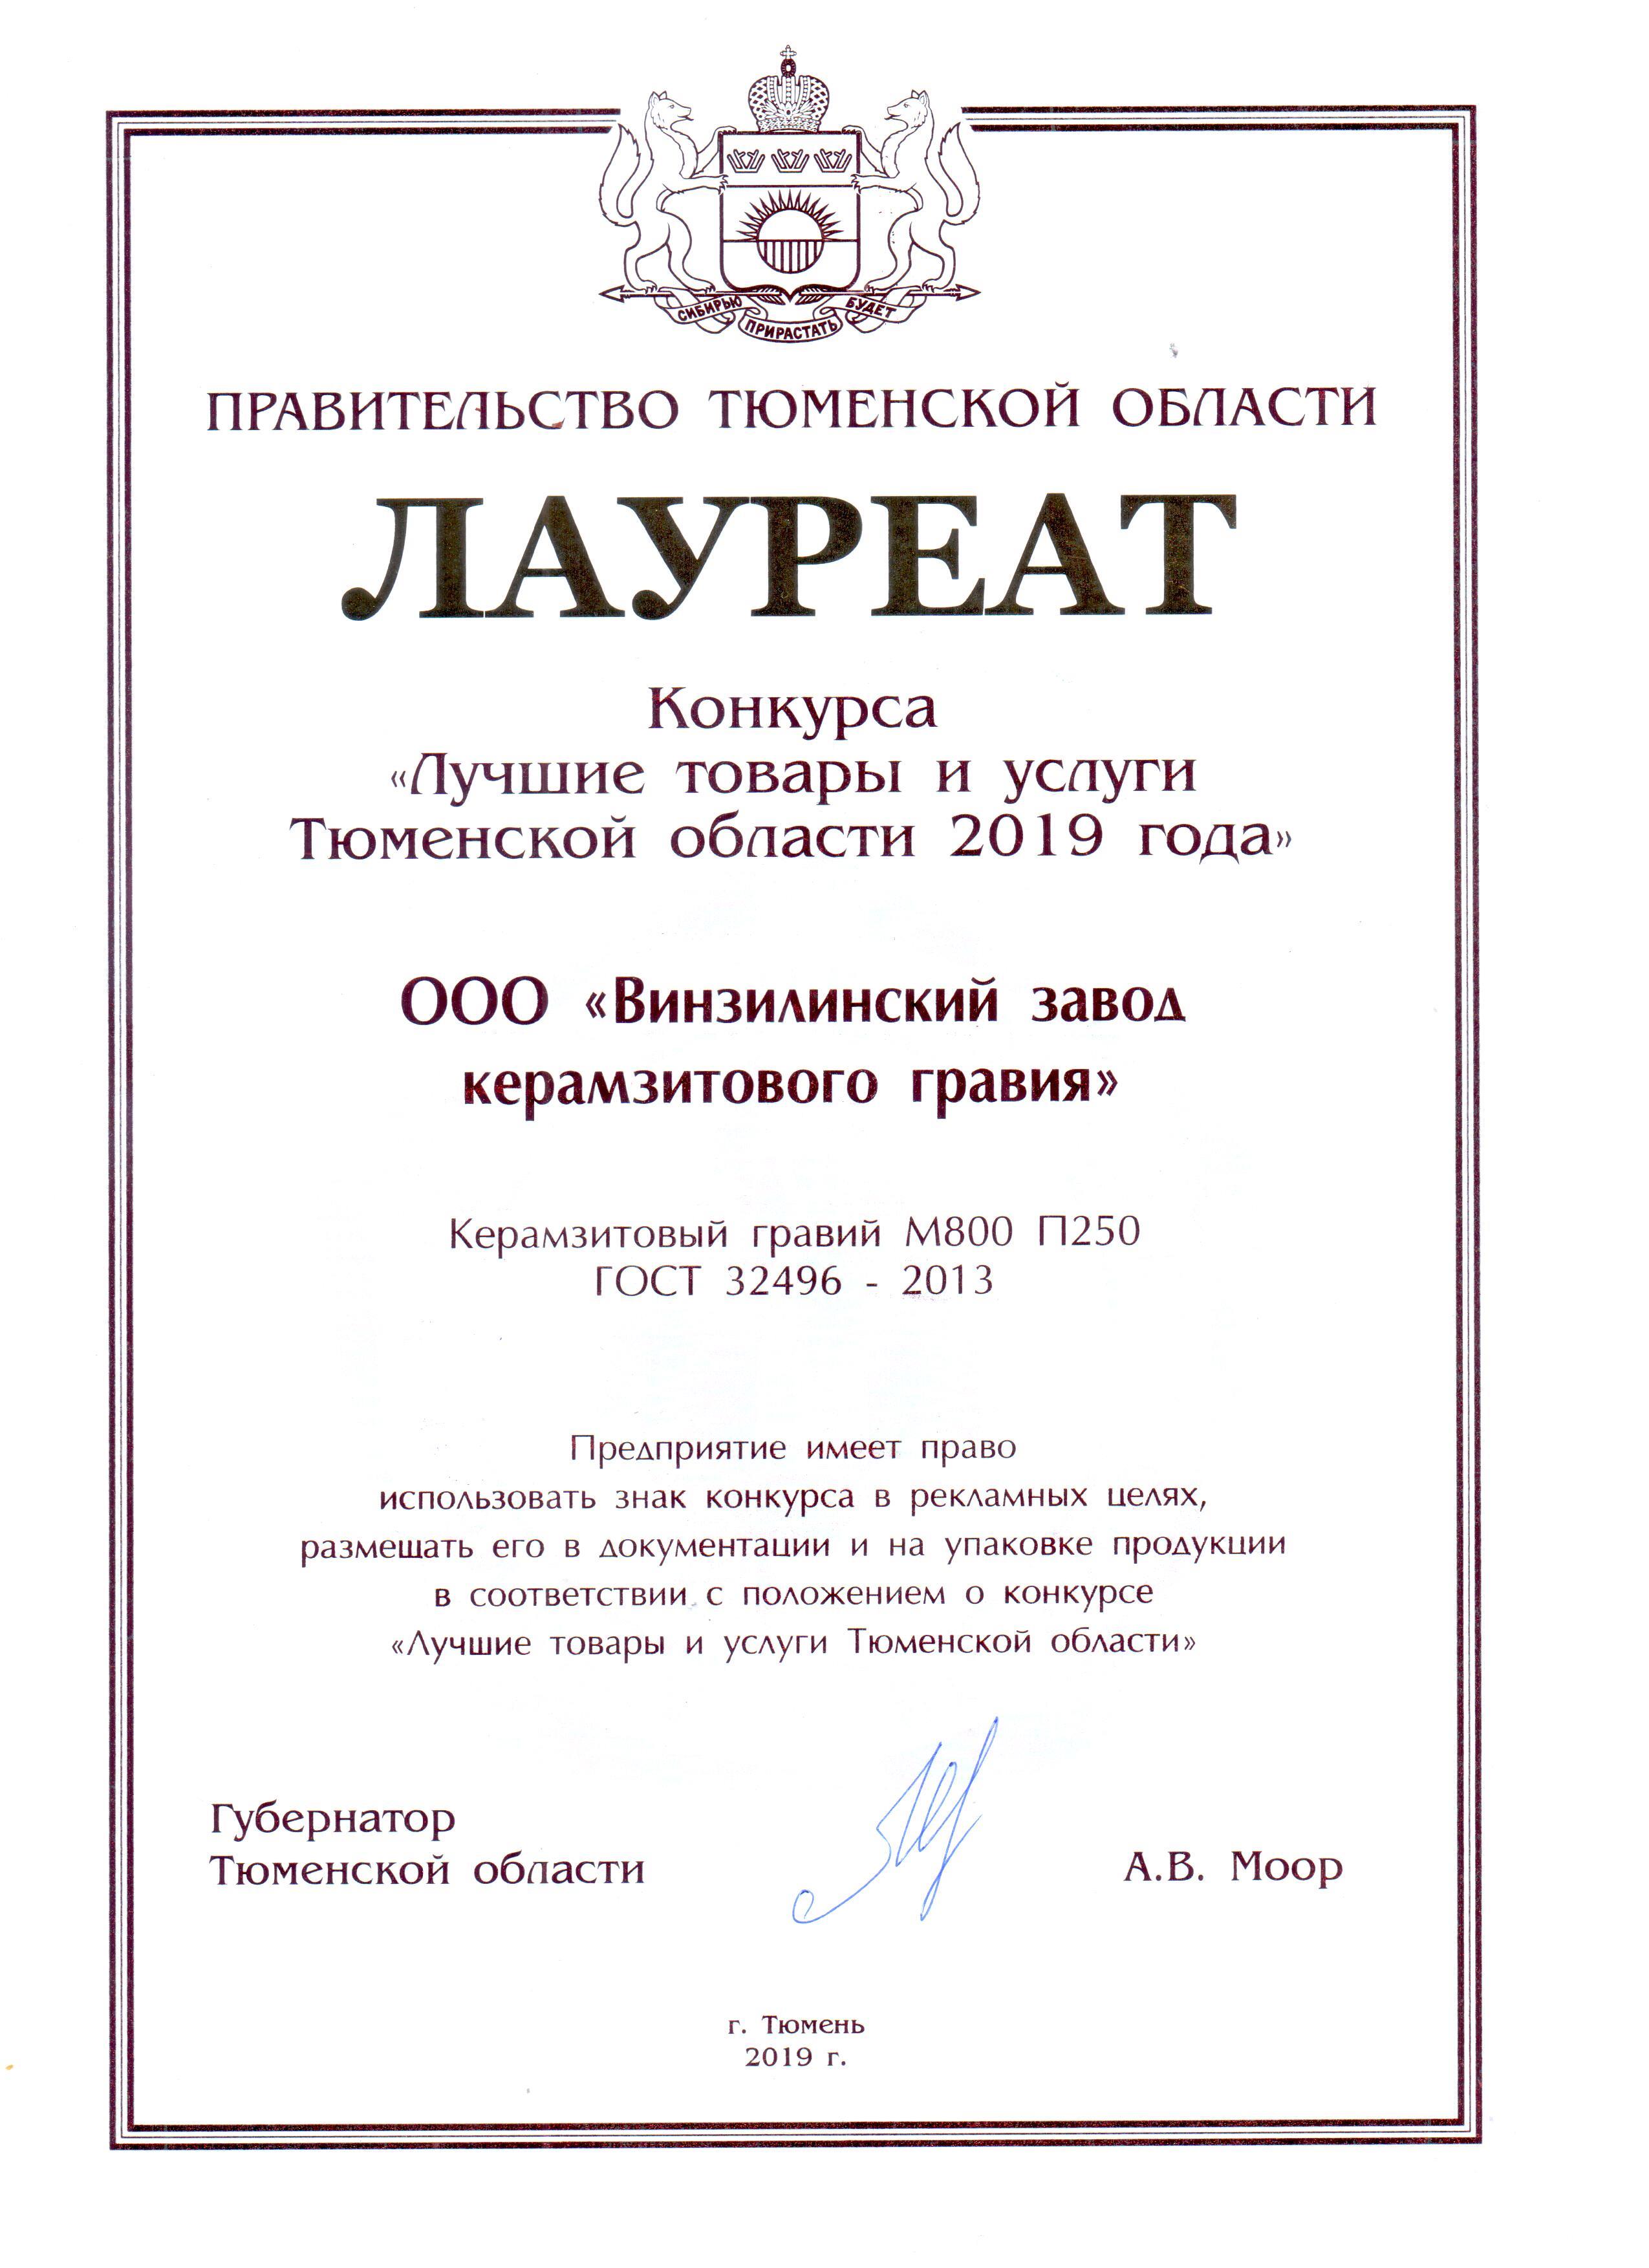 100 Лучших товаров Тюменской области 2019 Керамзитовый гравий М800